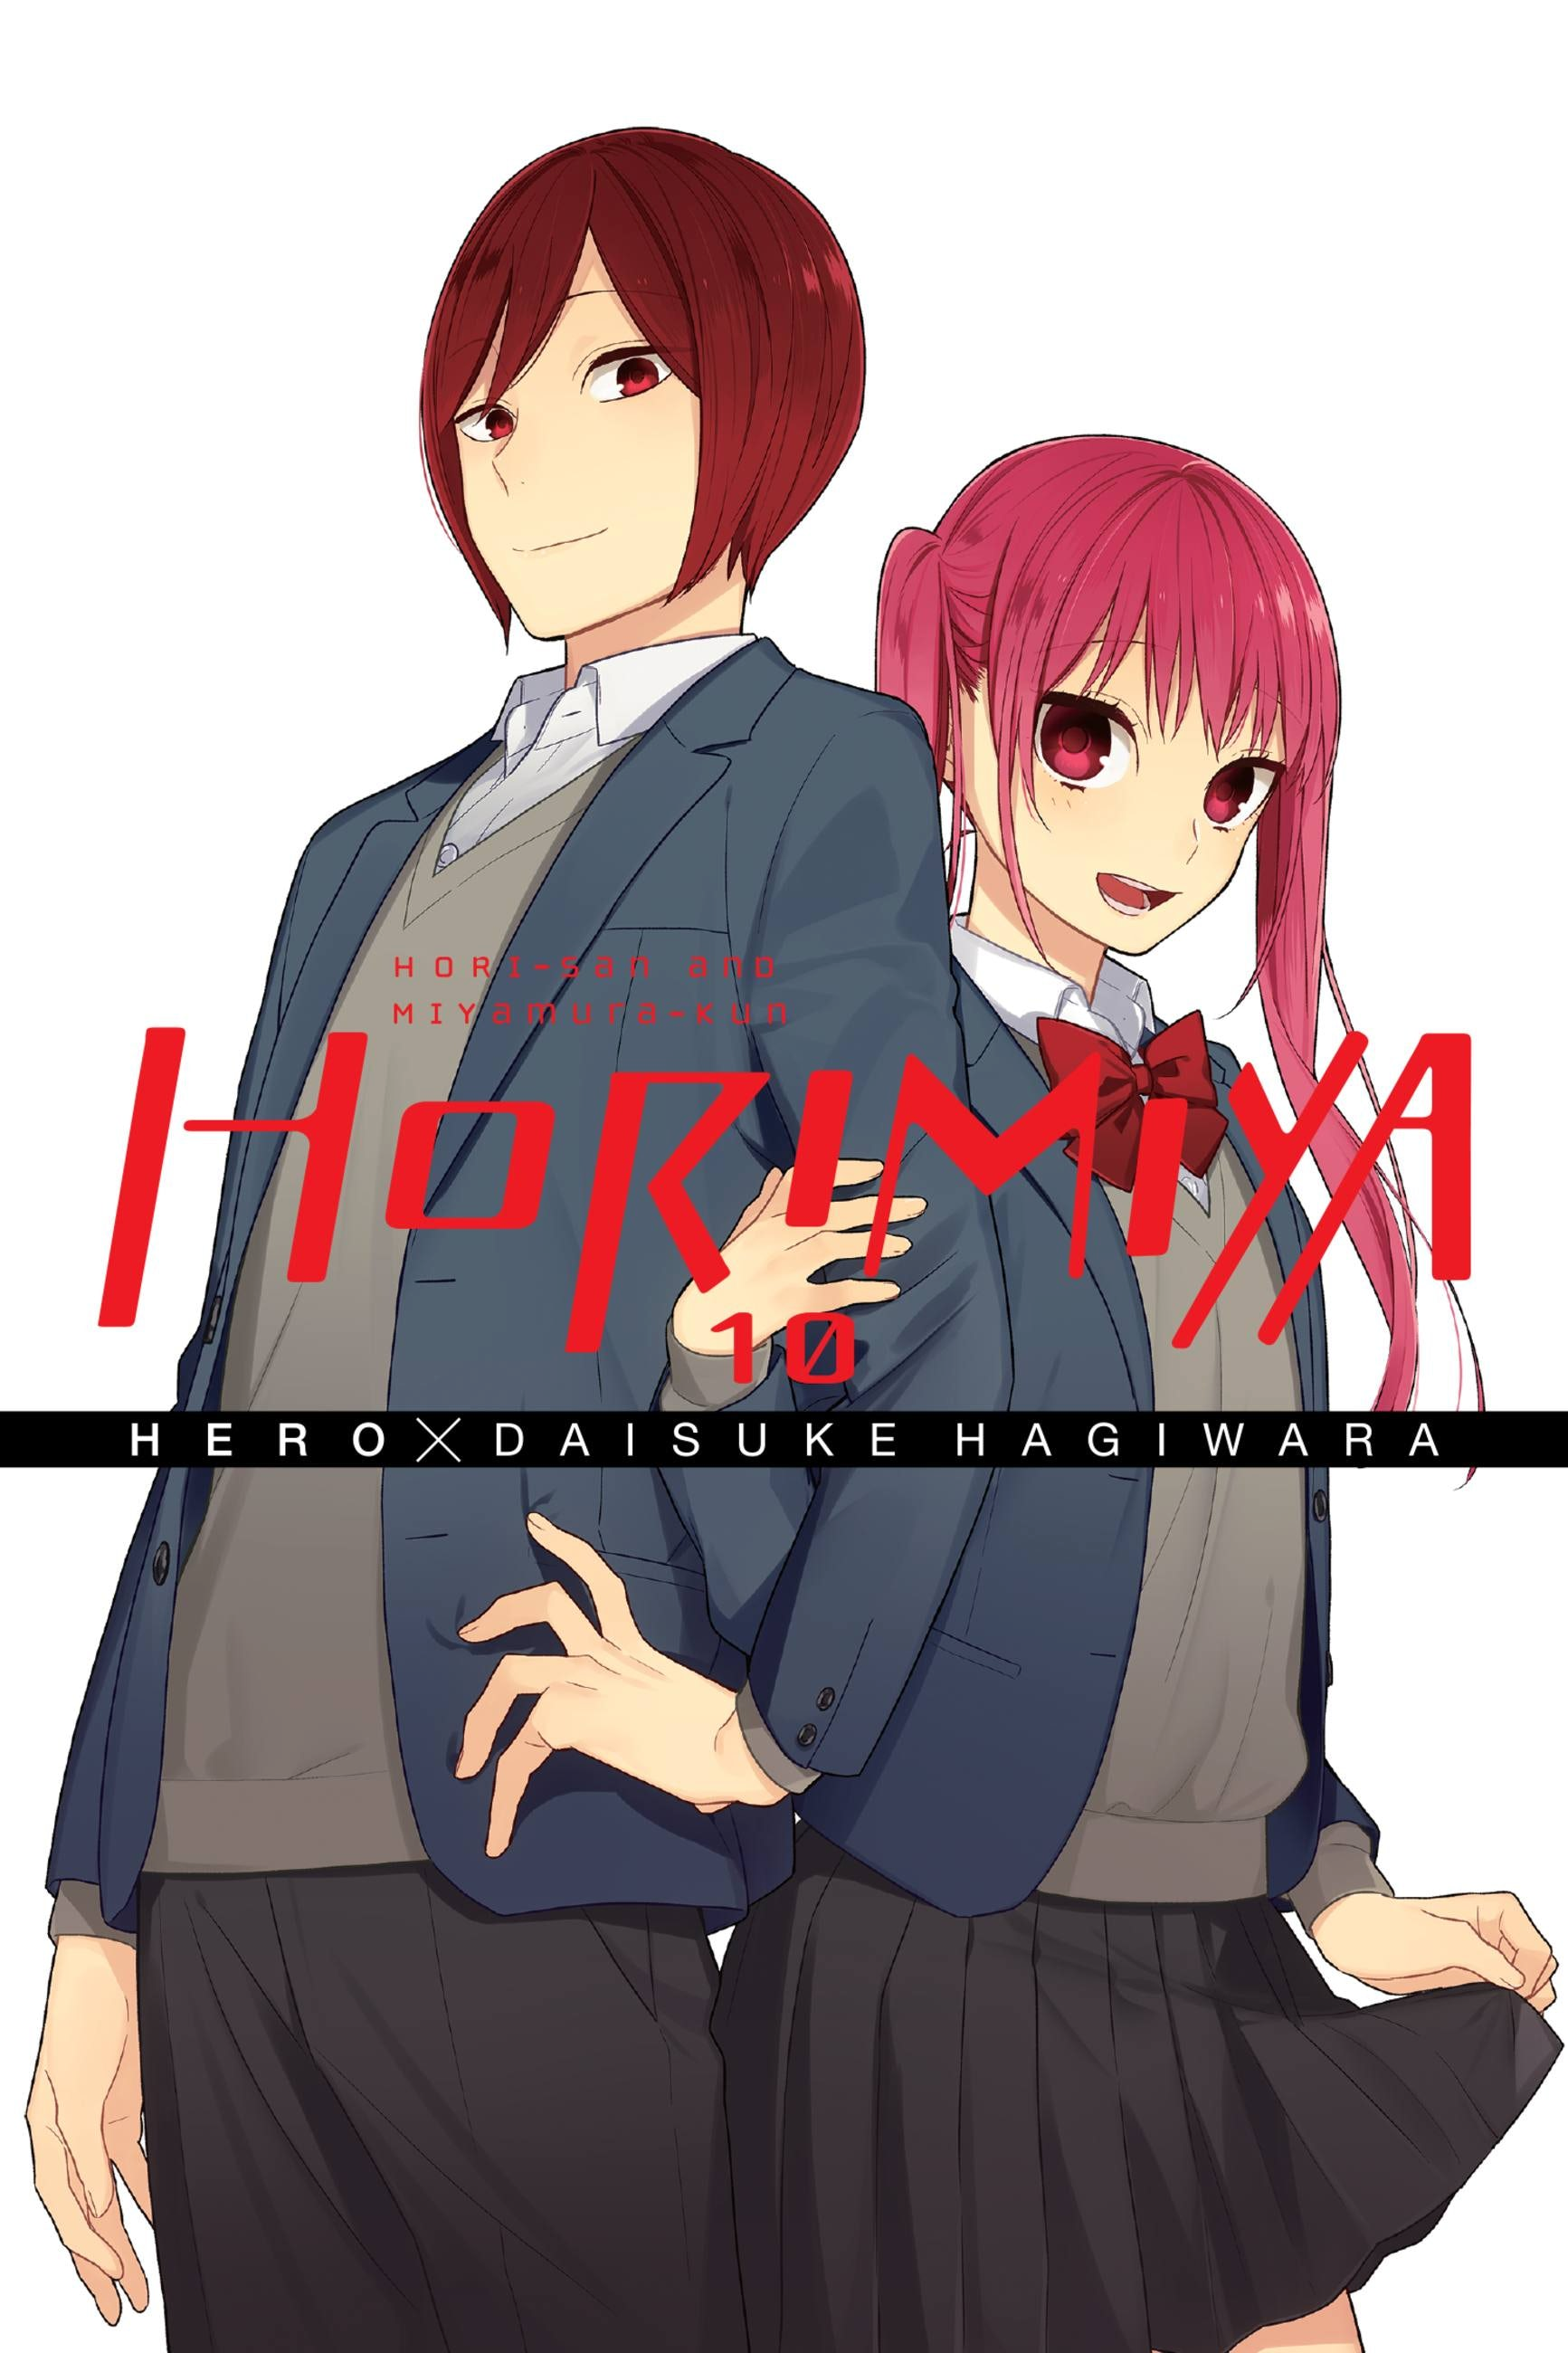 Horimiya Anime To Adapt All The Way to The Manga Ending  Anime Corner